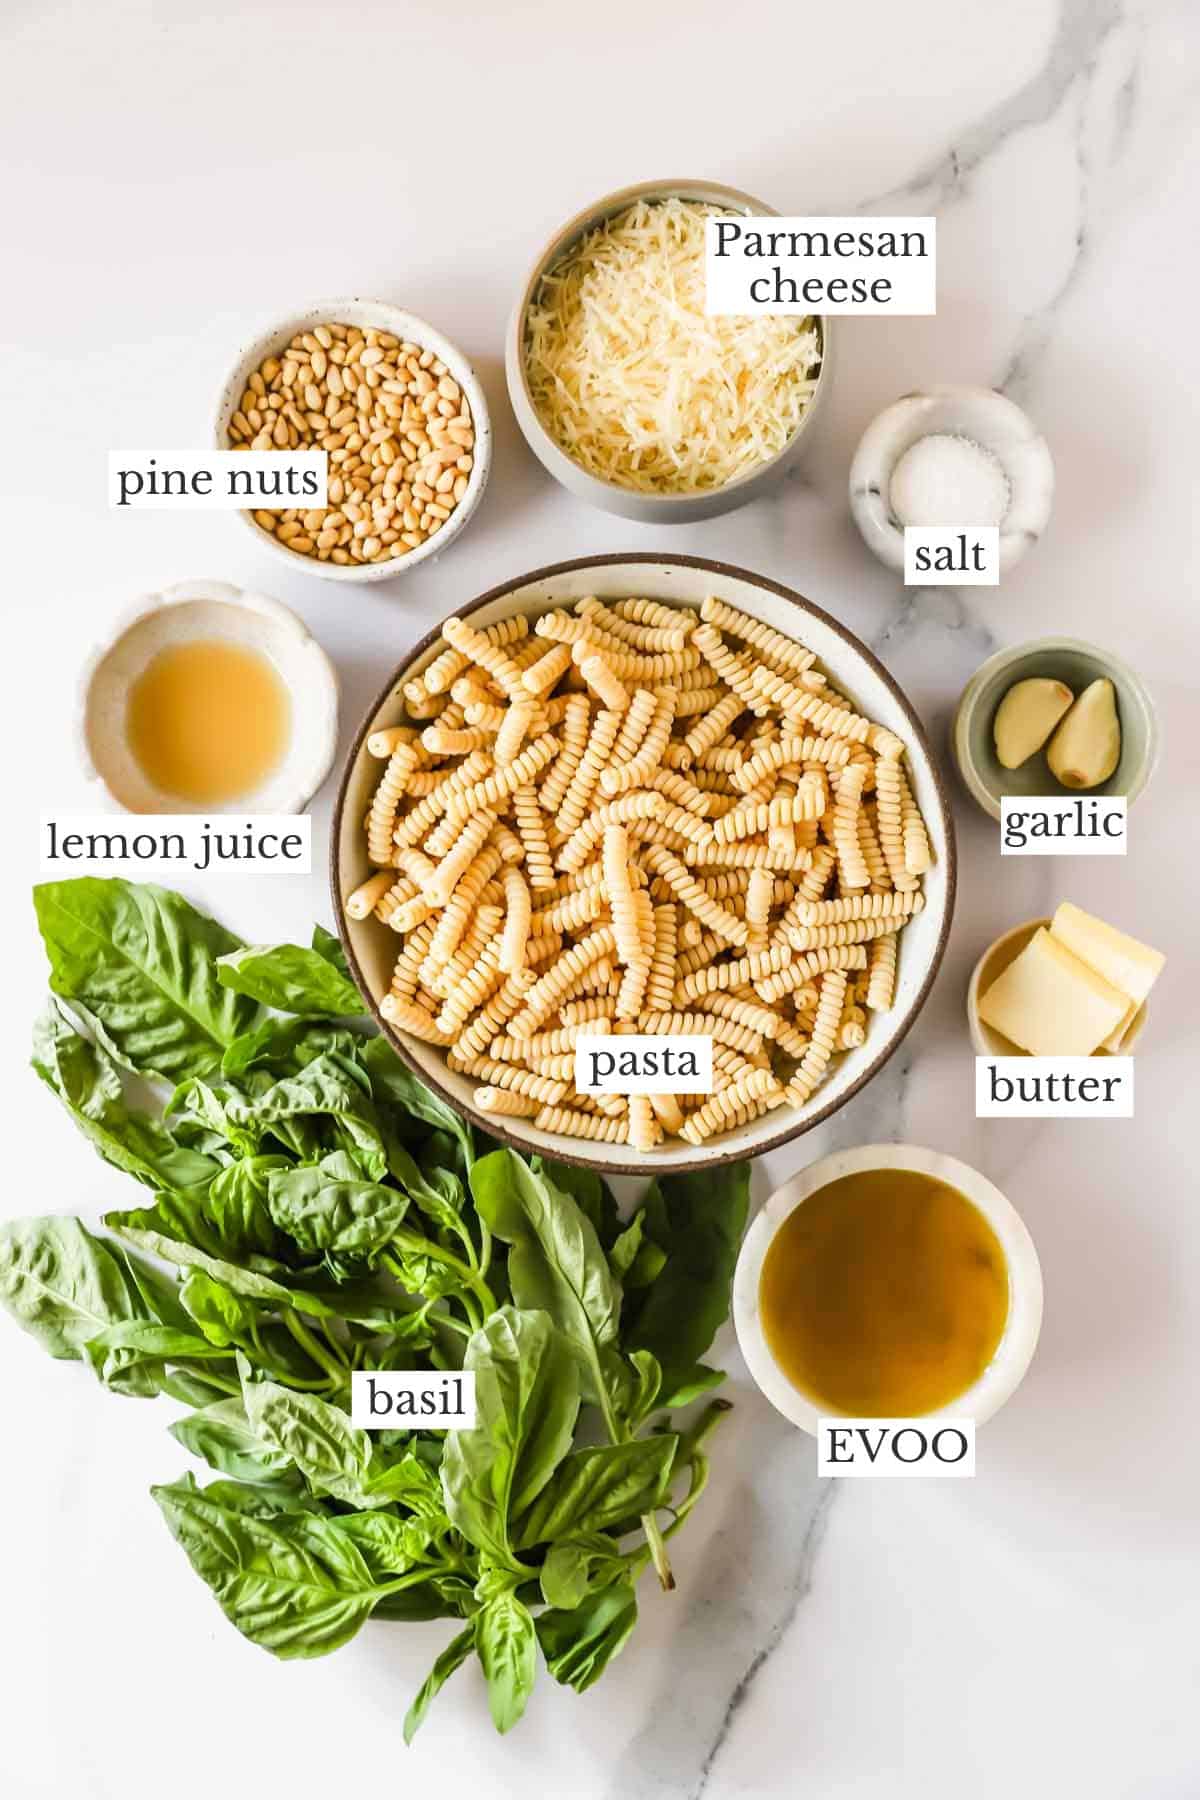 Ingredients to make basil pesto pasta.